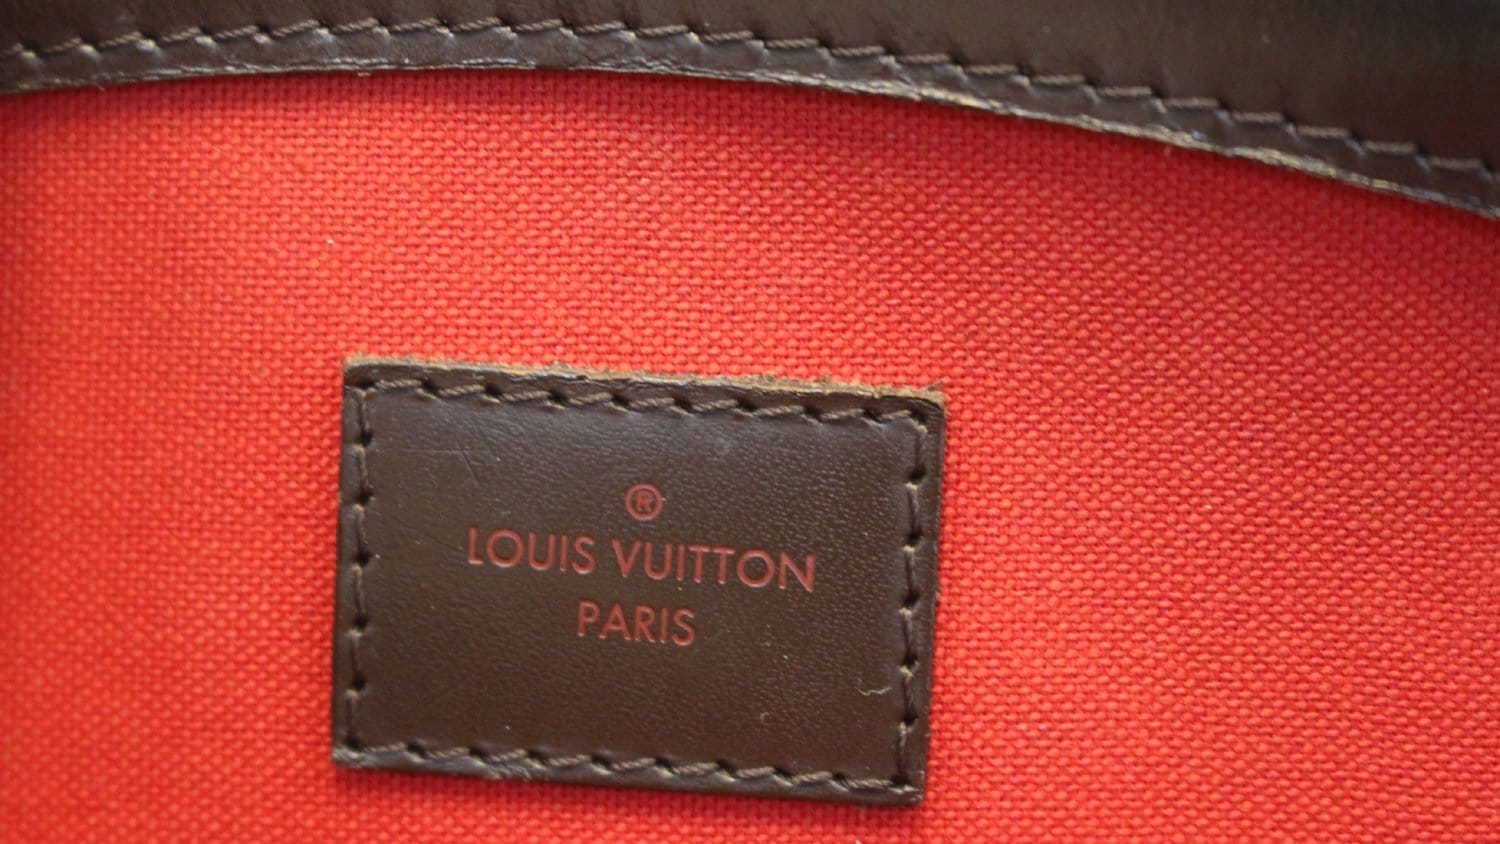 At Auction: Louis Vuitton, Louis Vuitton Damier Ebène Verona MM shoulder bag